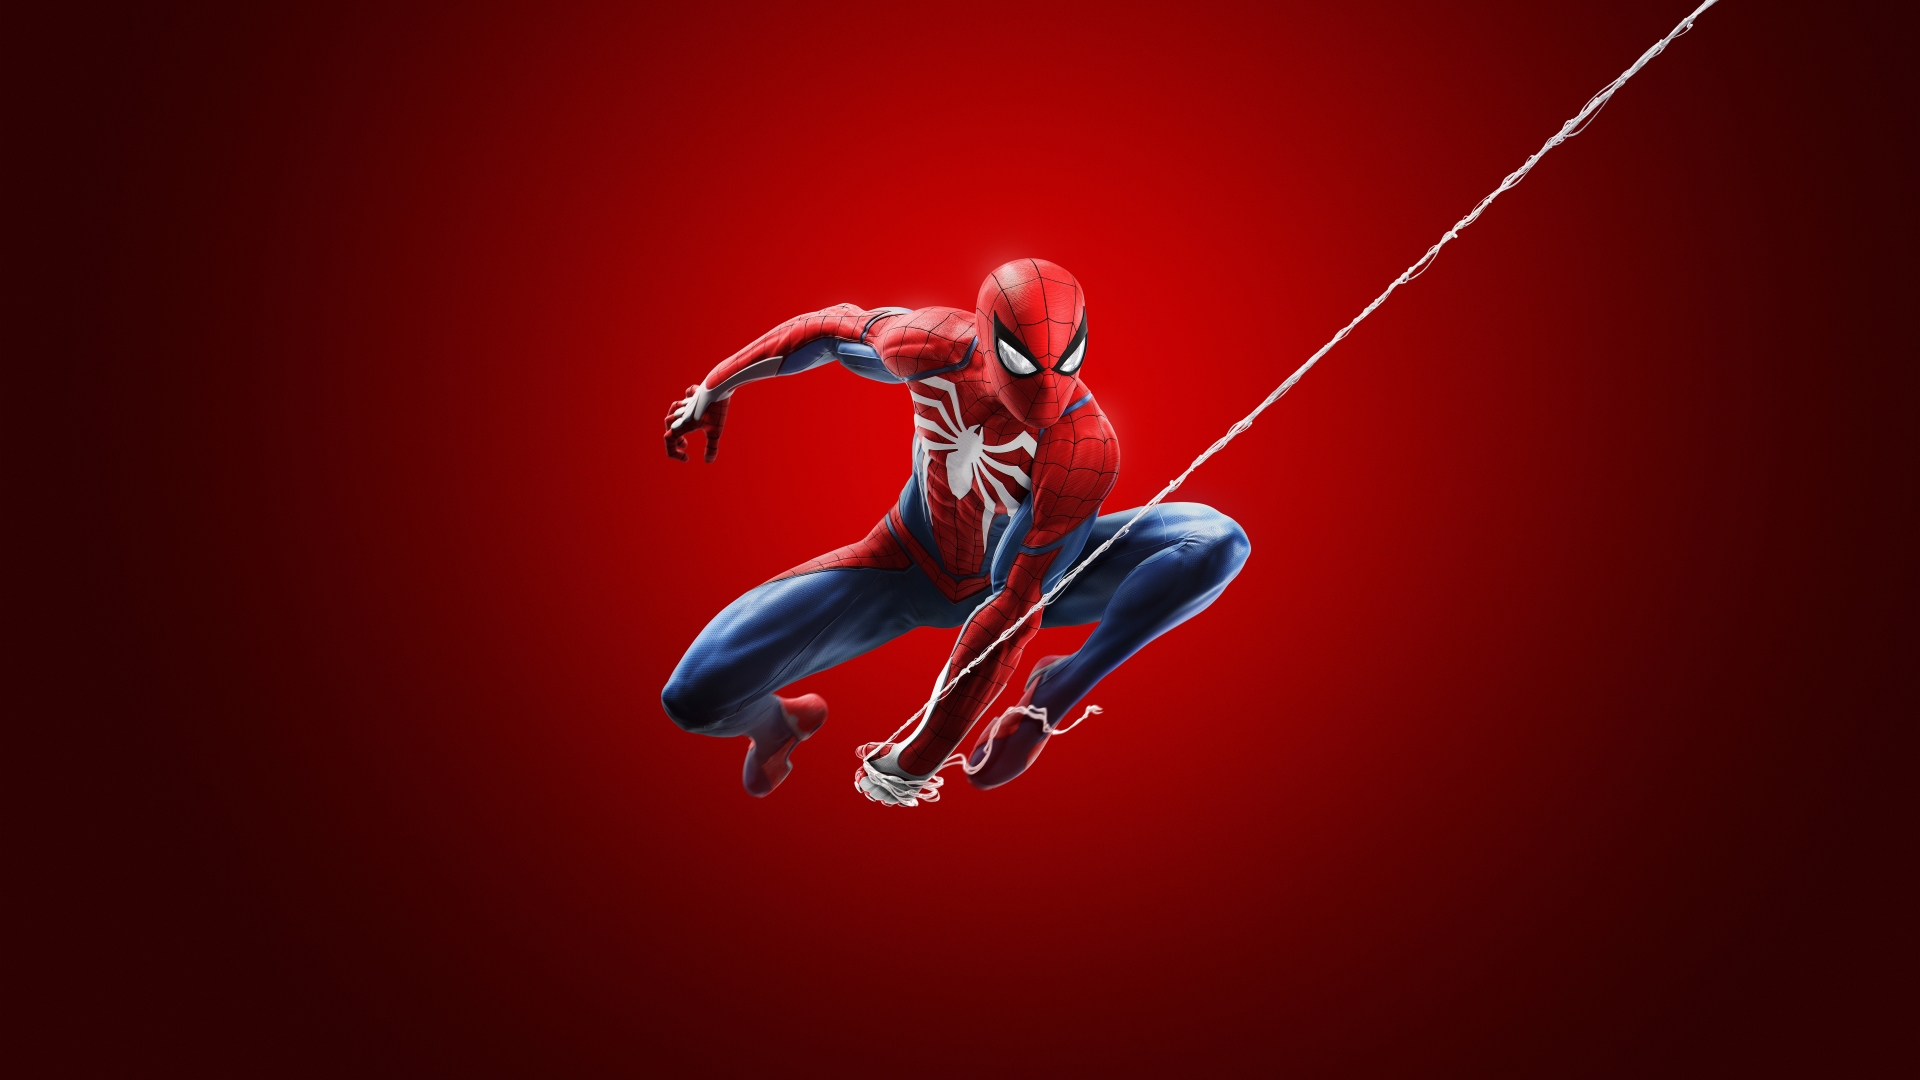 Spider-Man PS4 Wallpaper 8k Ultra HD ID:3452